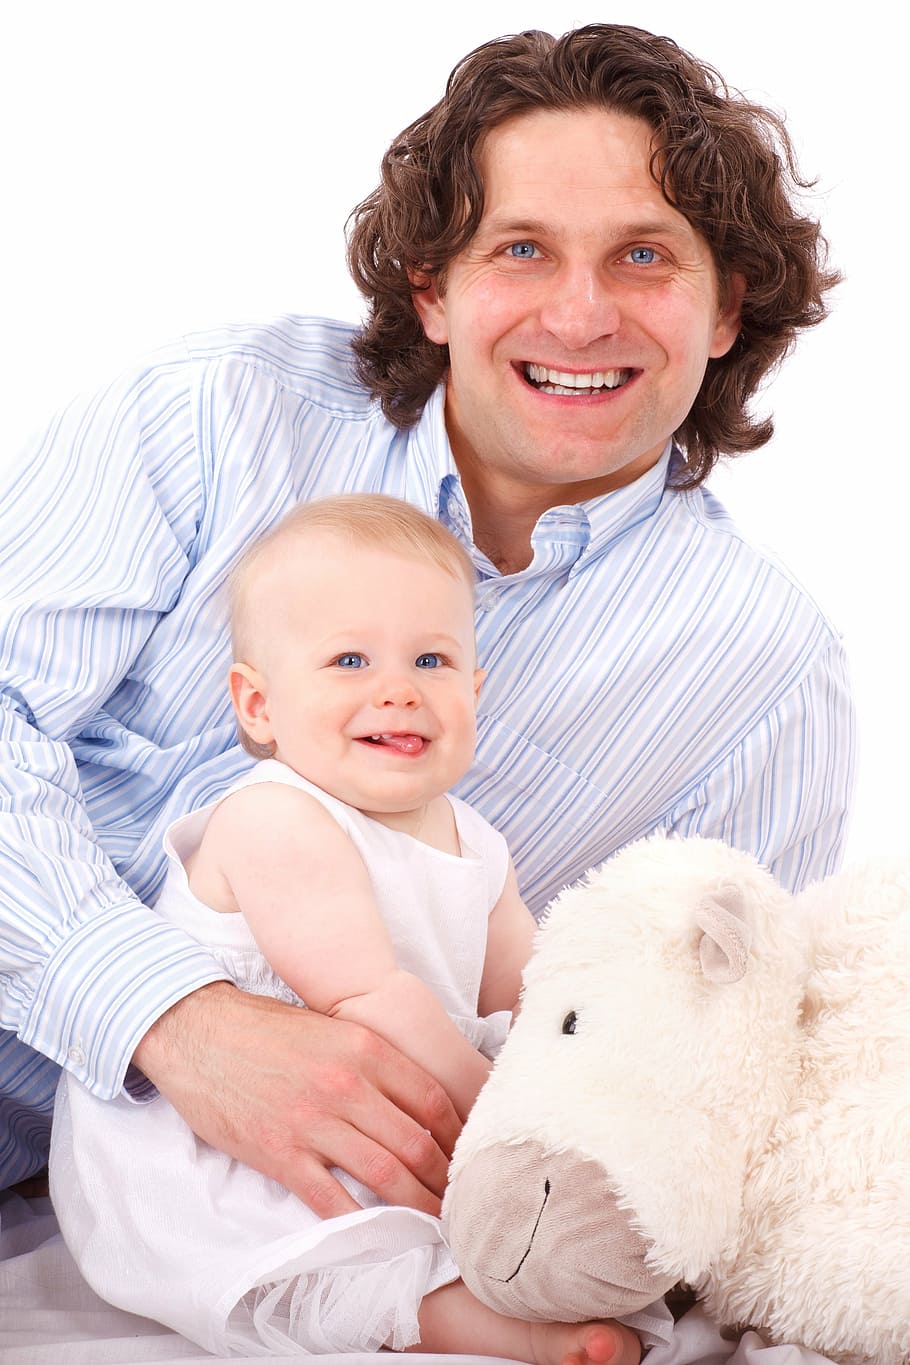 man holding baby wearing white sleeveless shirt beside white animal plush toy, HD wallpaper